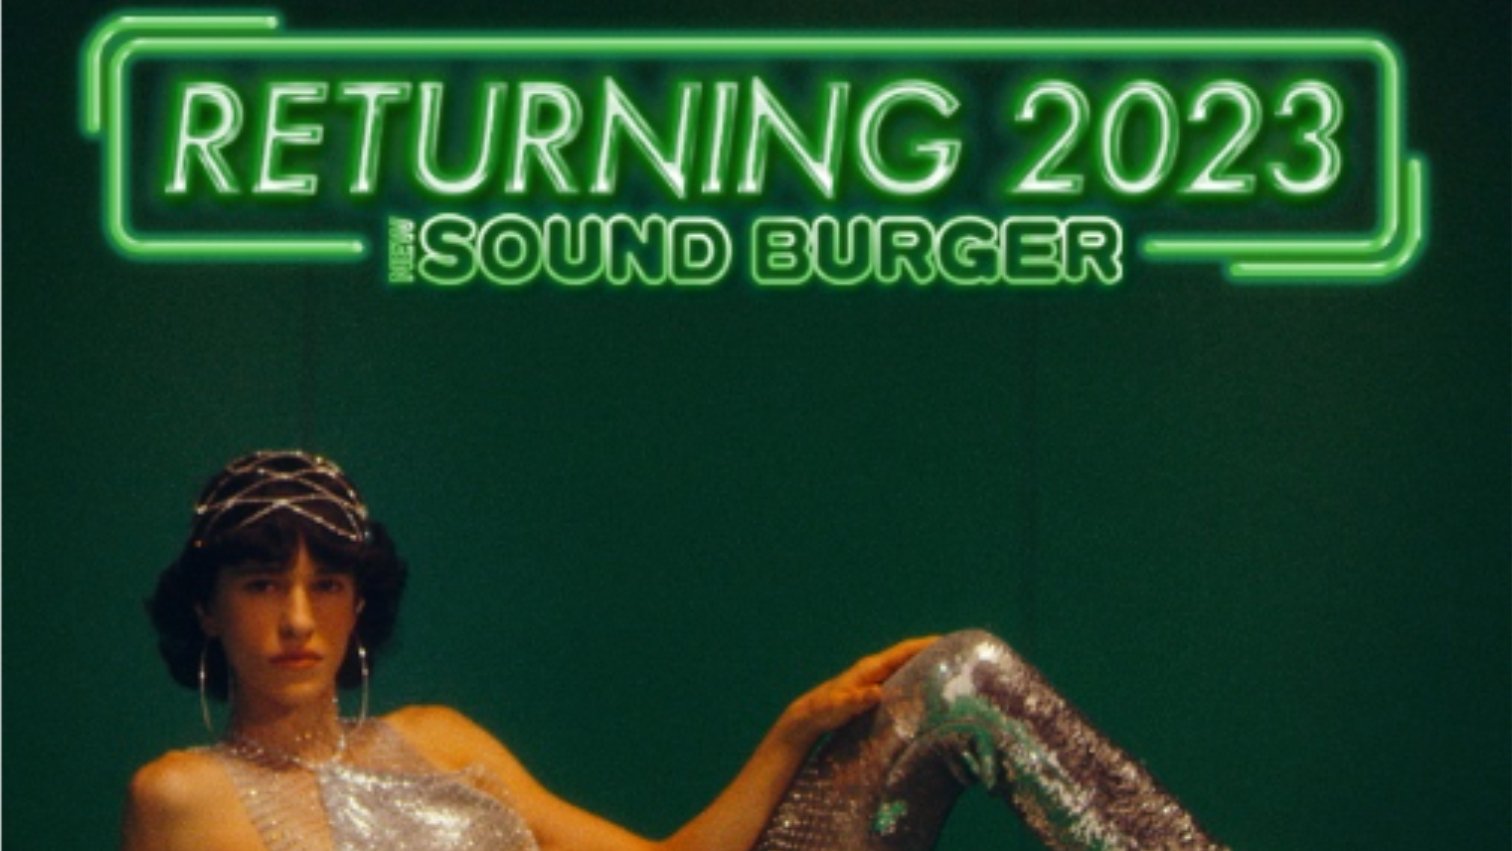 Audio-Technica Sound Burger написан неоново-зеленым цветом, внизу позирует модель.